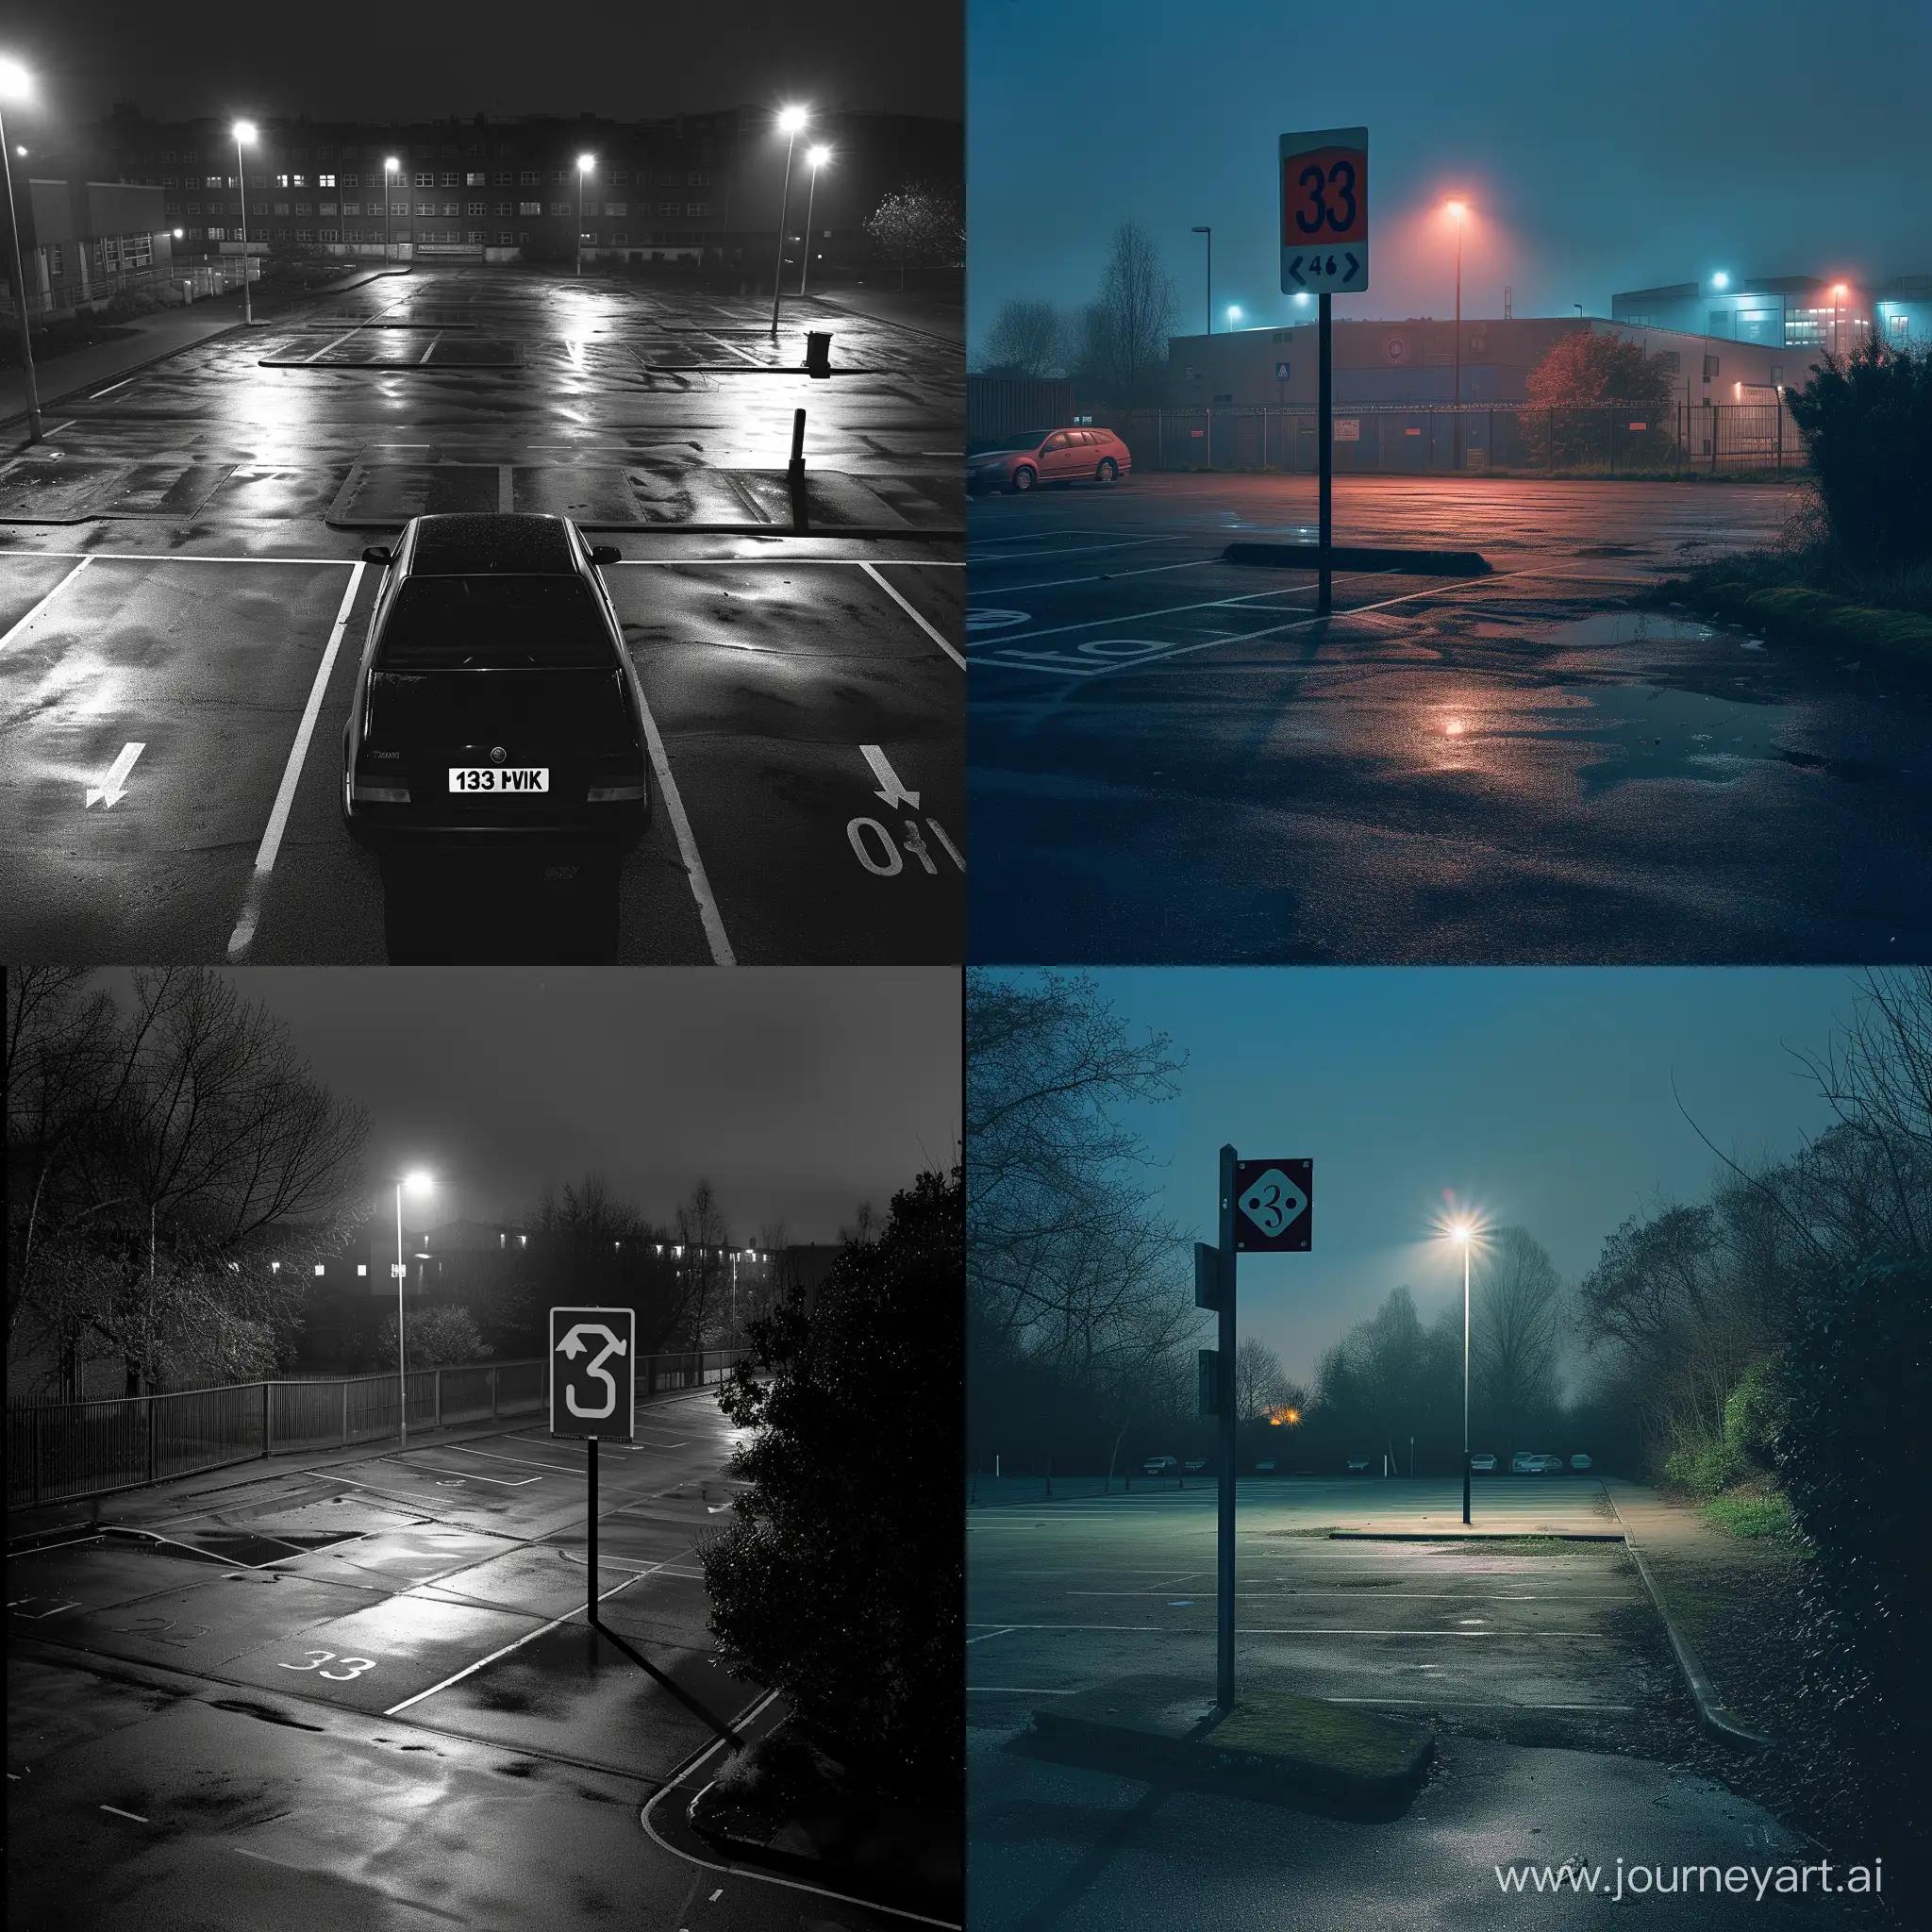 Quiet-Night-Scene-at-School-Car-Park